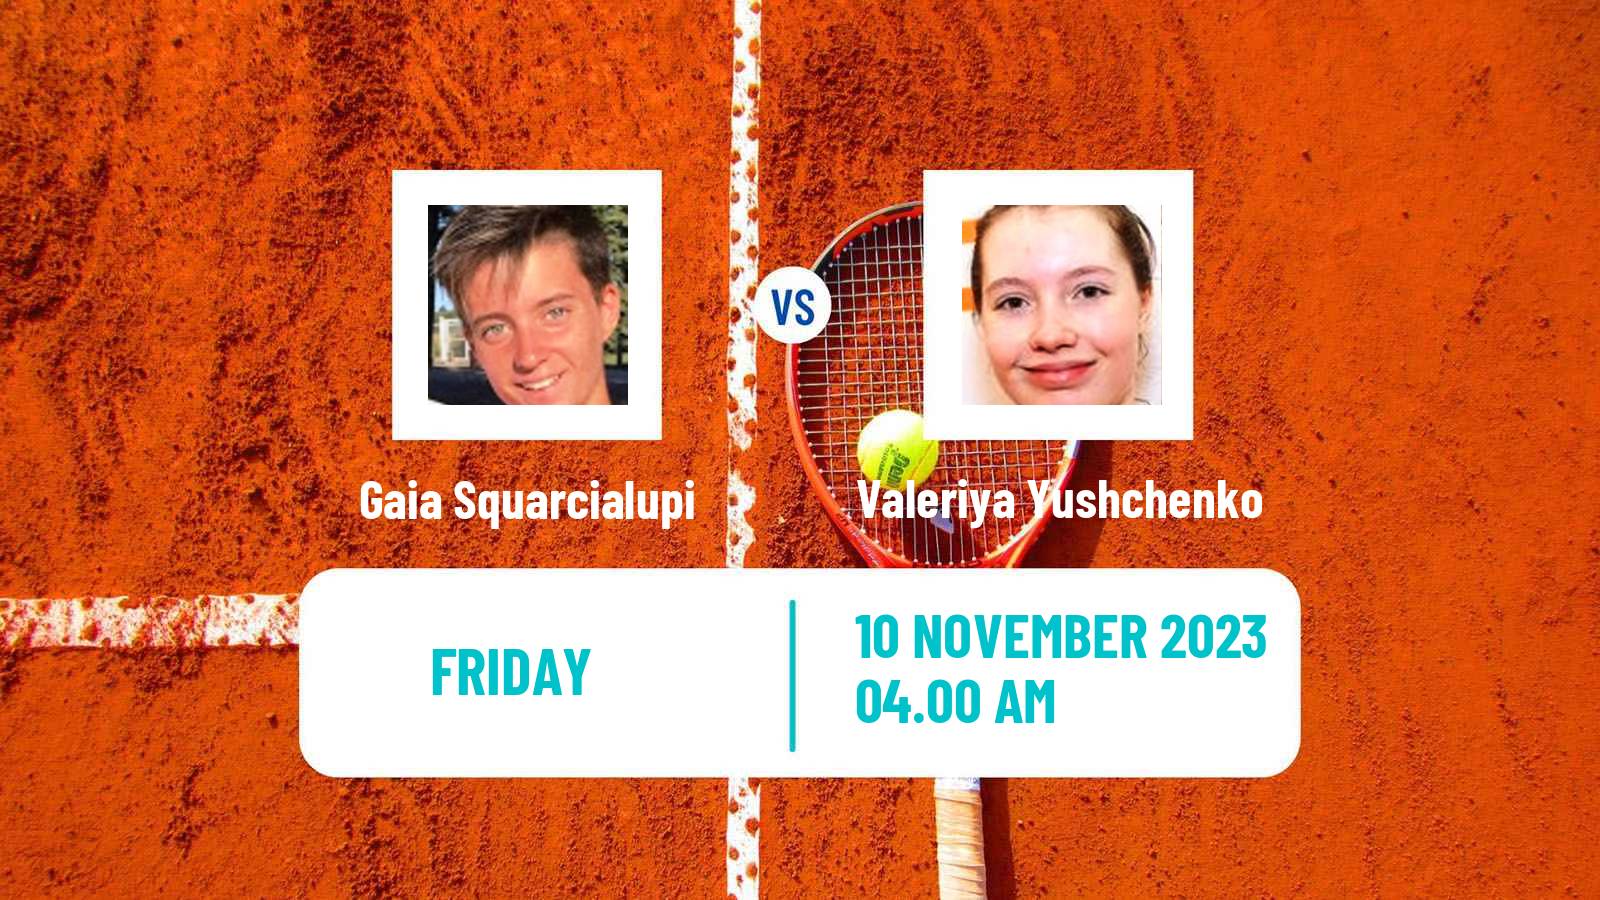 Tennis ITF W15 Antalya 17 Women Gaia Squarcialupi - Valeriya Yushchenko